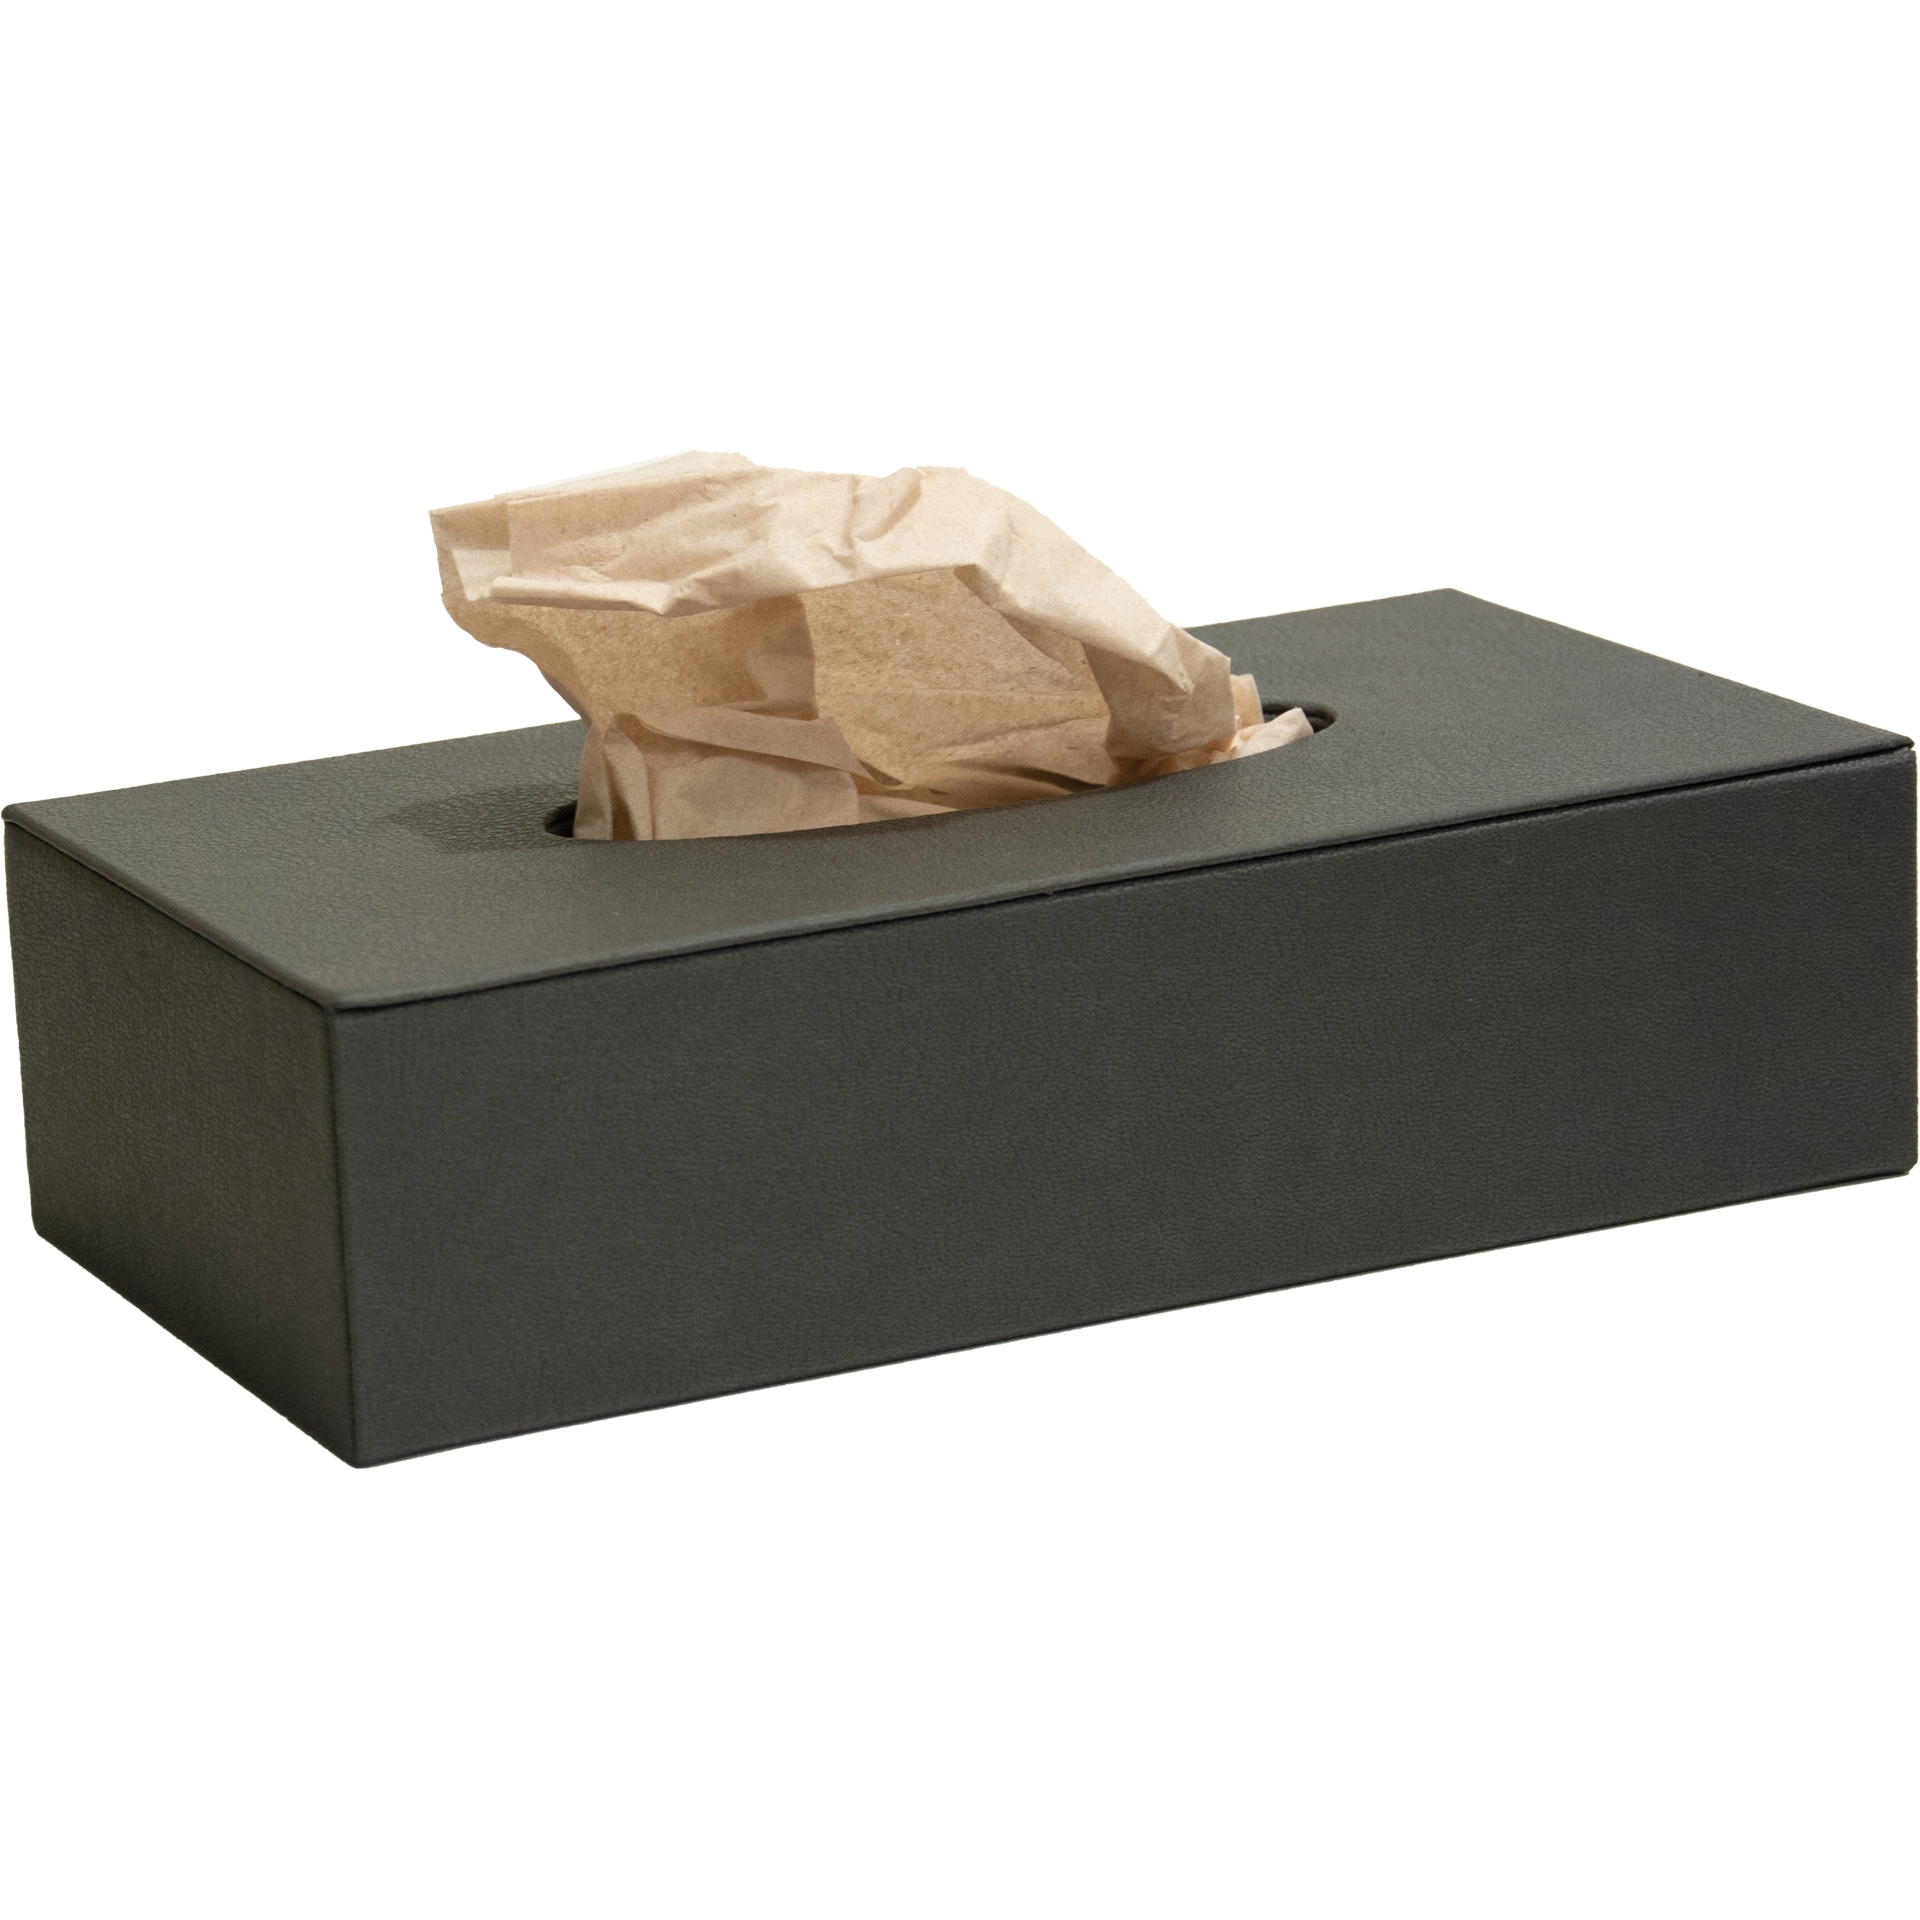 Dispenser für Kosmetikbox | La Carte Holz | Ecoleder 2 FarbenYUT braun oder cremeSchließung Magnet25x13x h 6 cm Min.: 10 Stk.